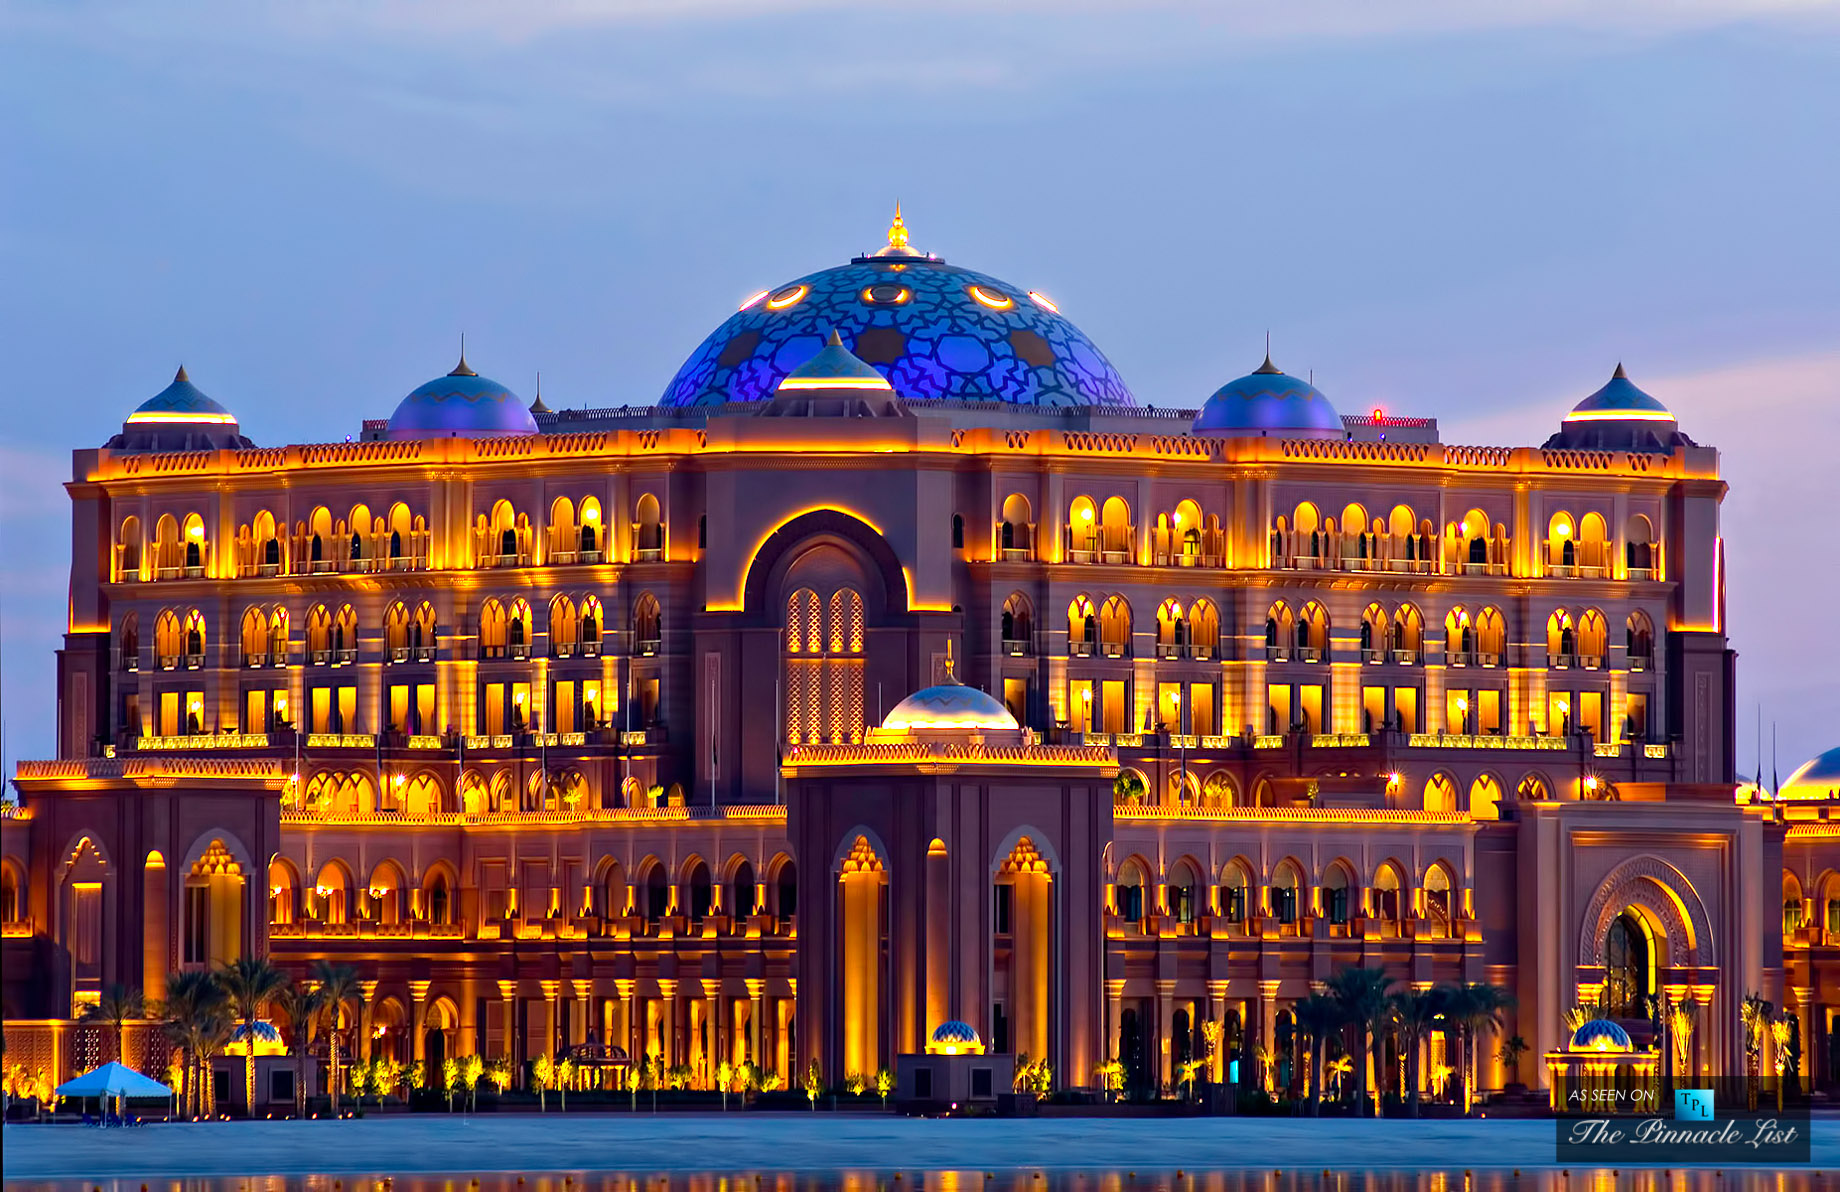 Emirates Palace - West Corniche Road, Abu Dhabi, United Arab Emirates